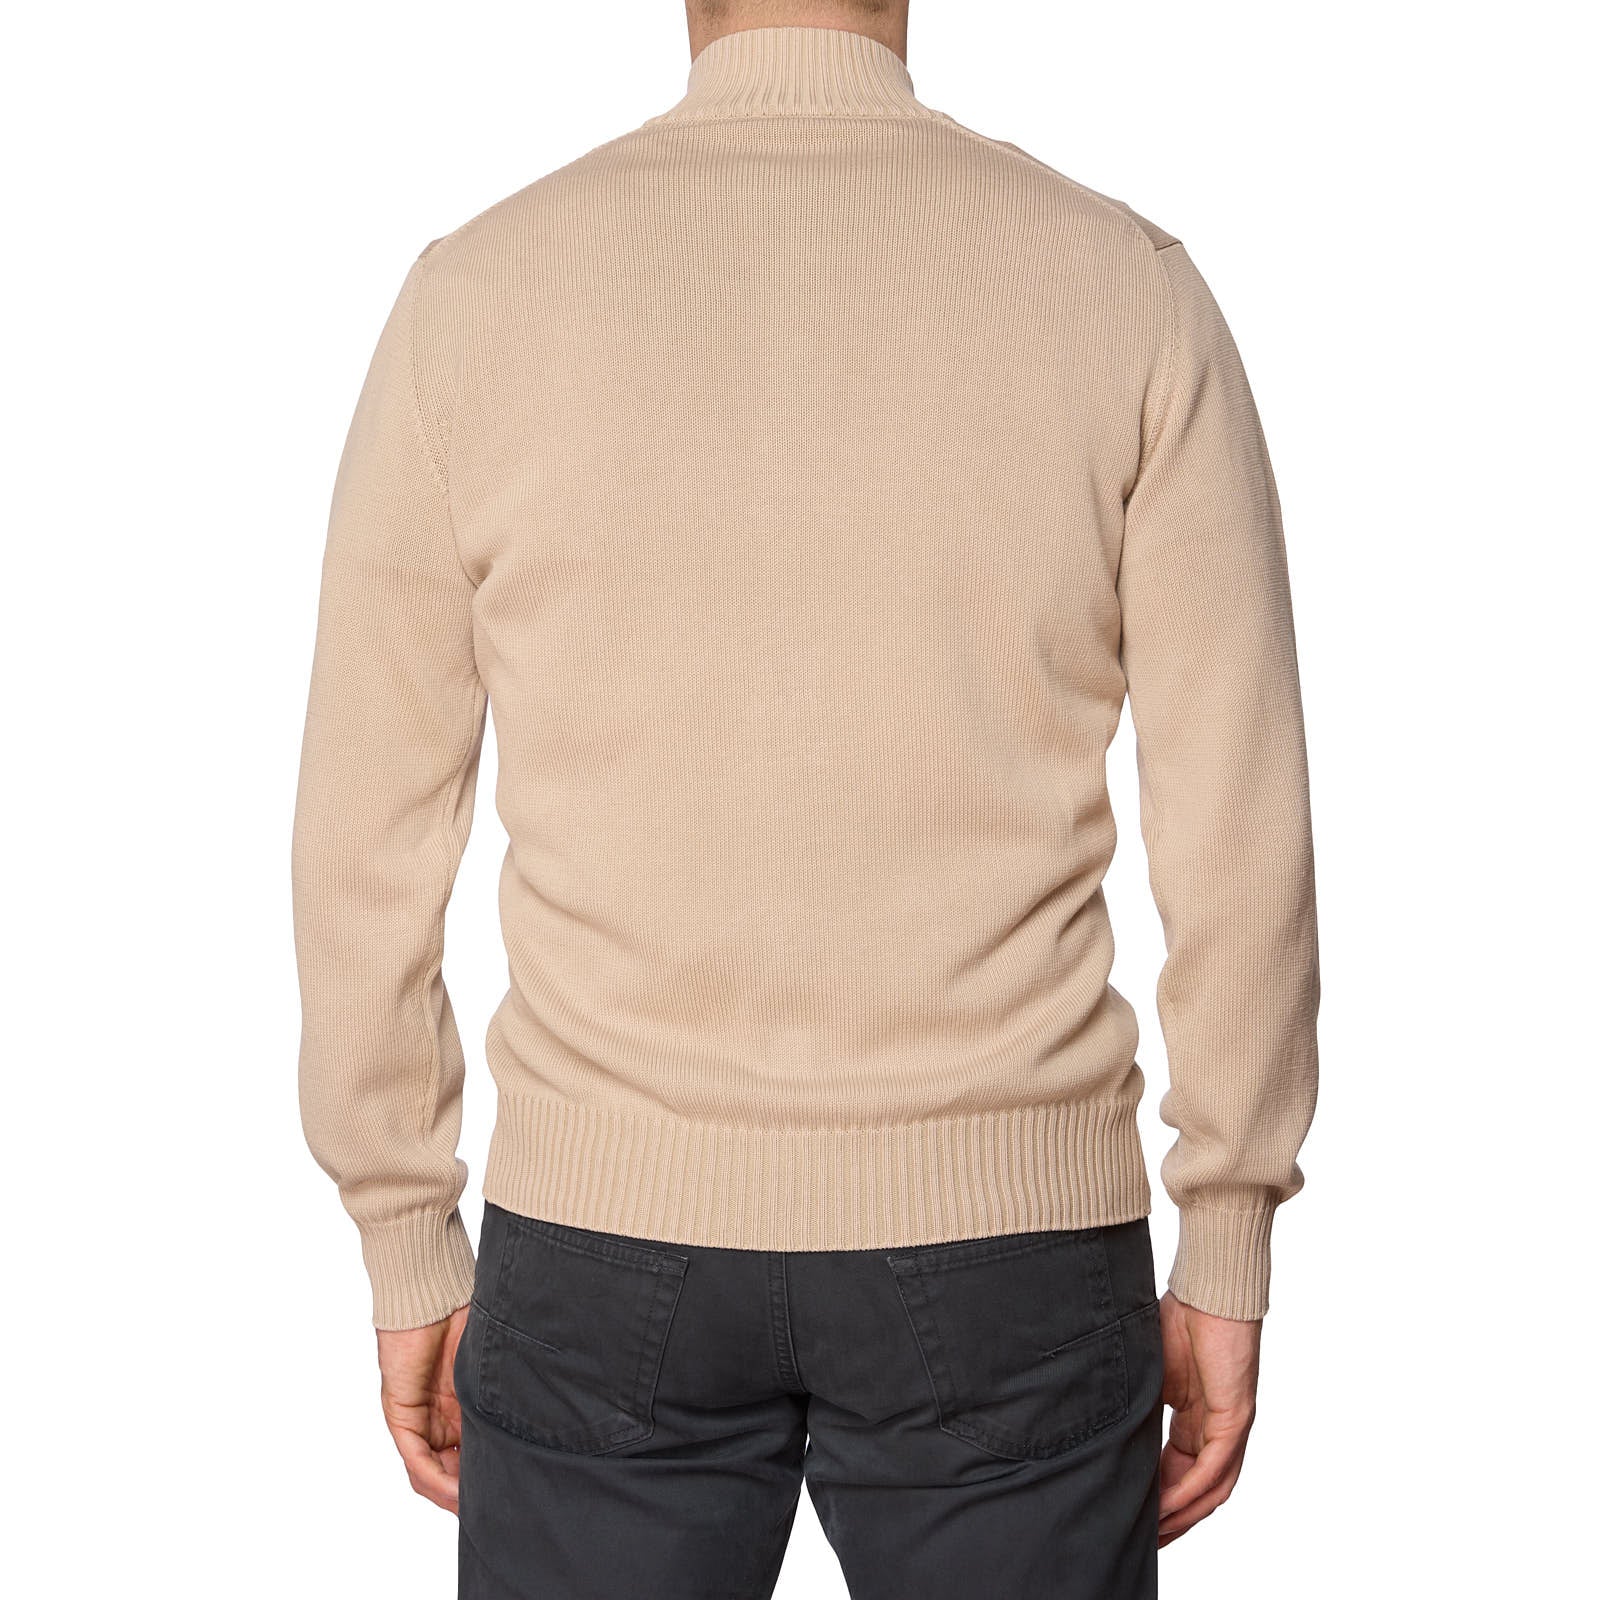 DELLA CIANA for VANNUCCI Light Beige Cotton Knit Cardigan Sweater NEW